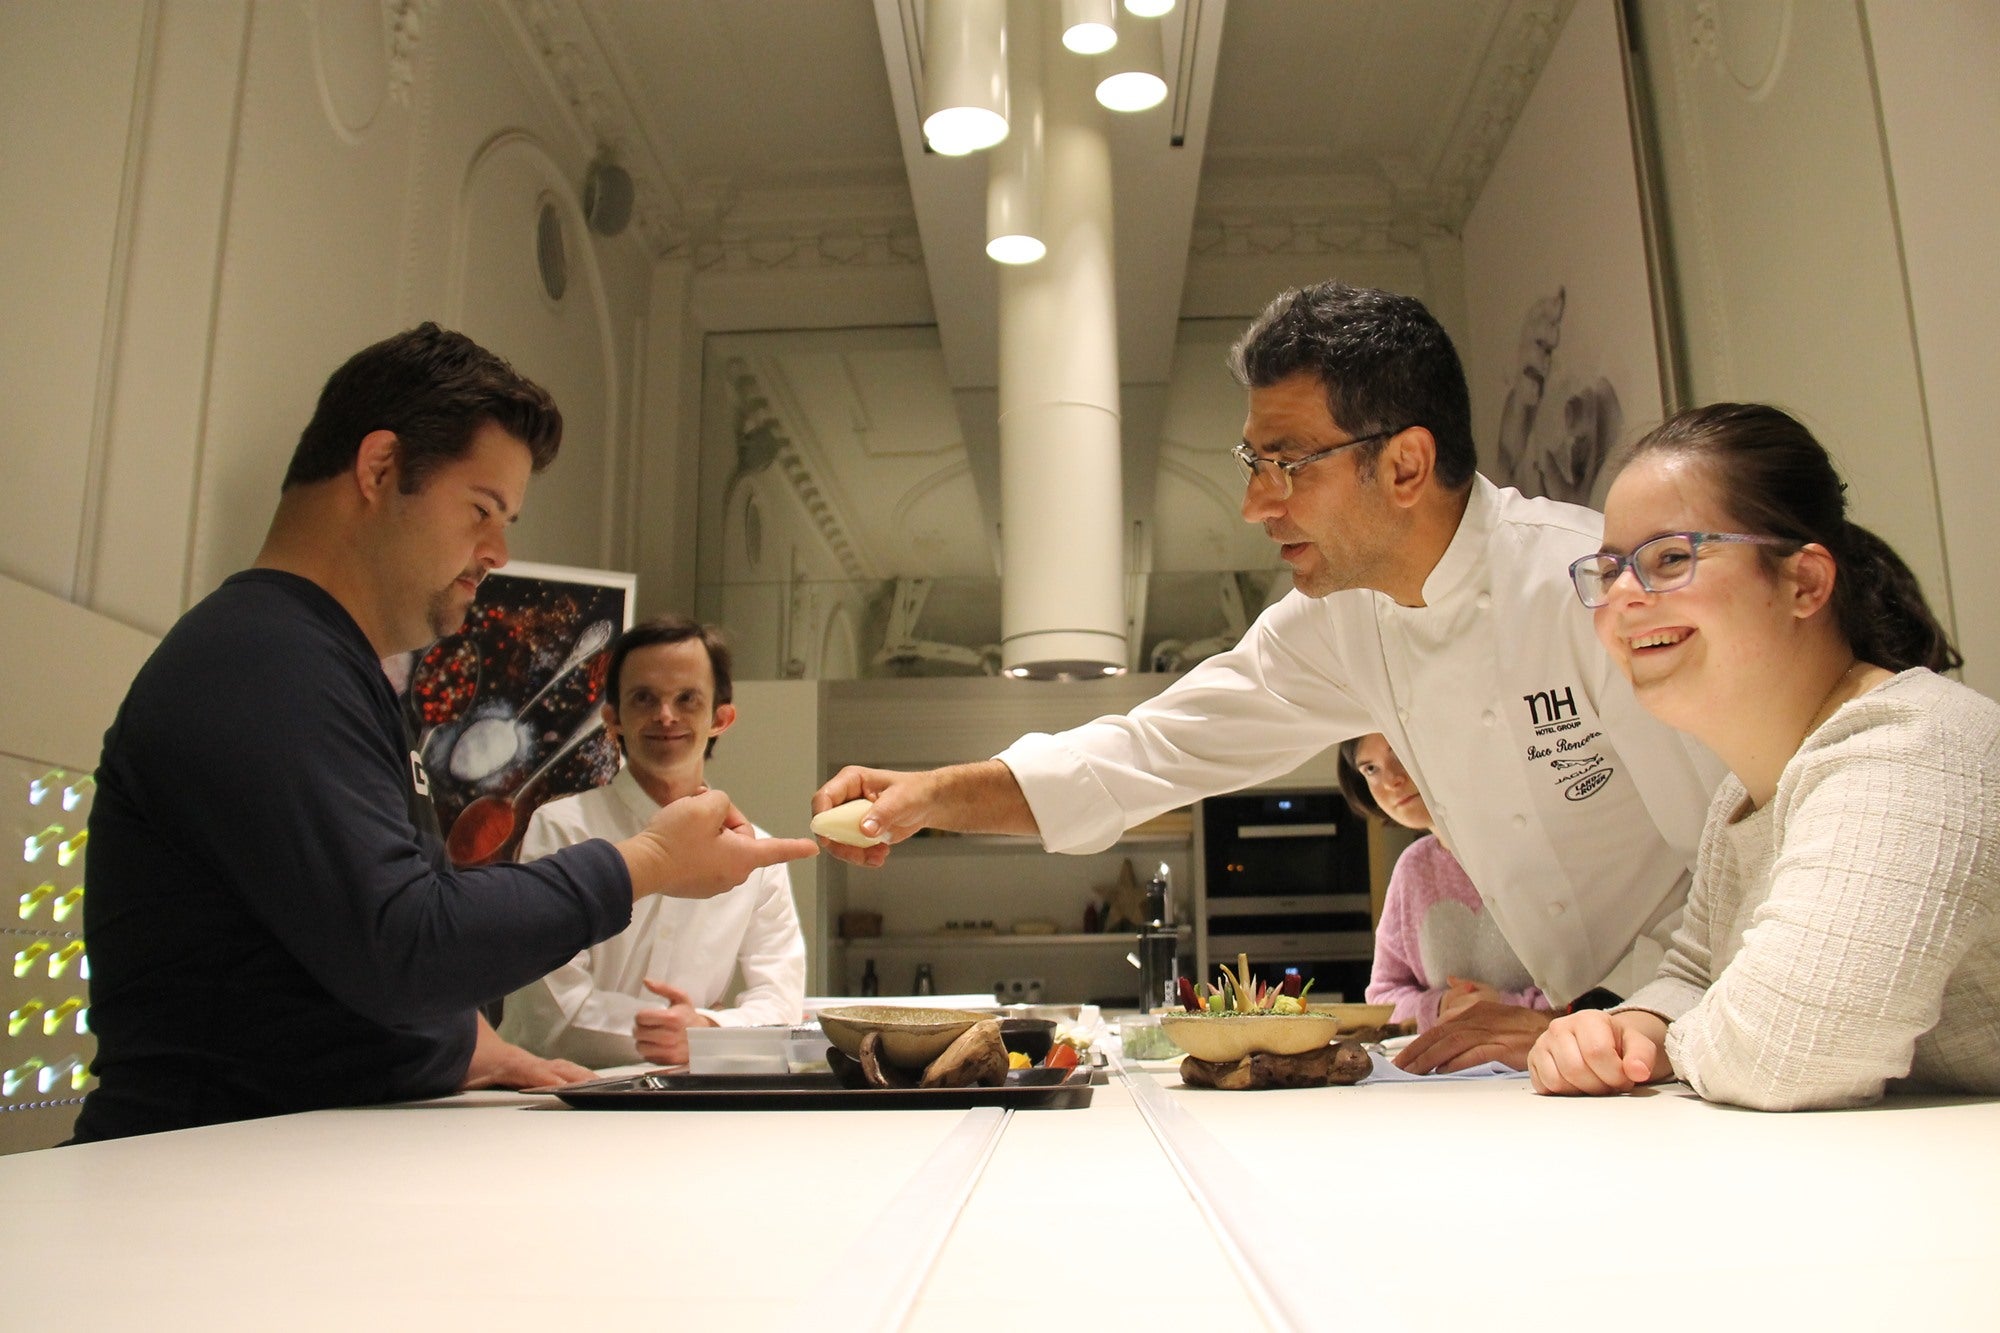 Paco Roncero es uno de los laureados cocineros que colaboran en el proyecto. Foto: Down Madrid.